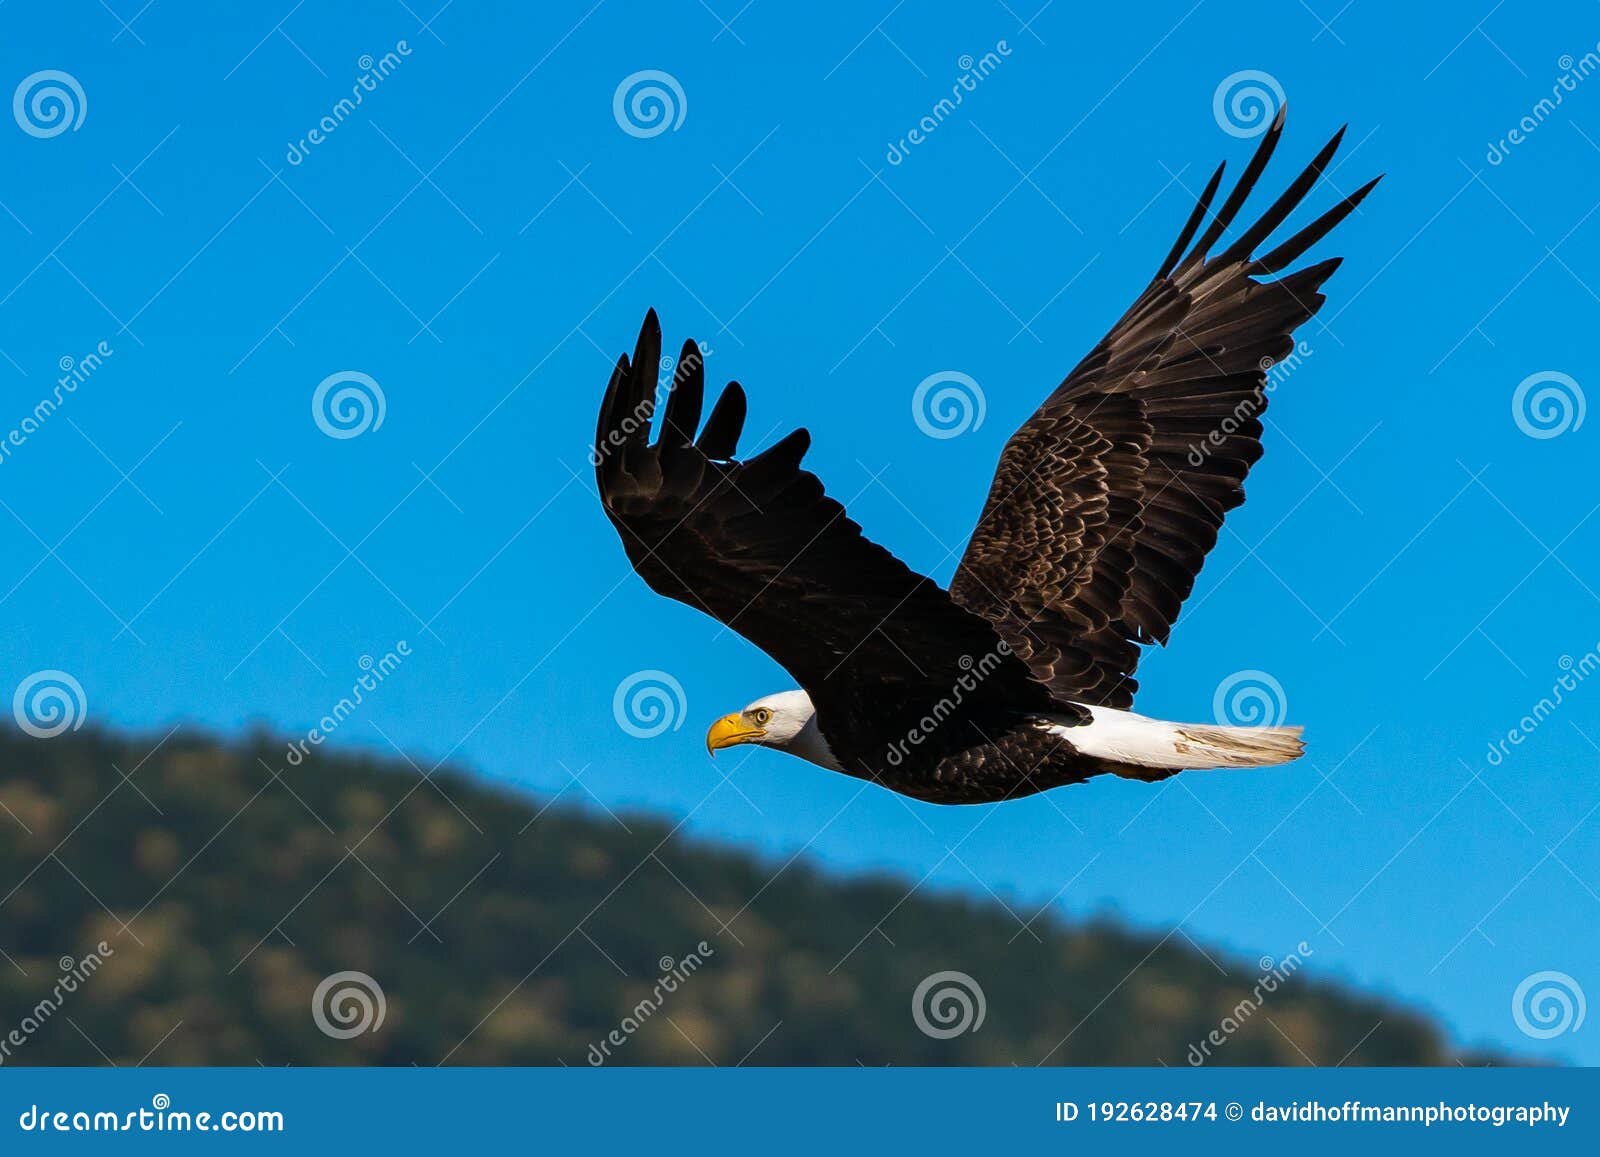 bald eagle soaring in-flight, eagles flying